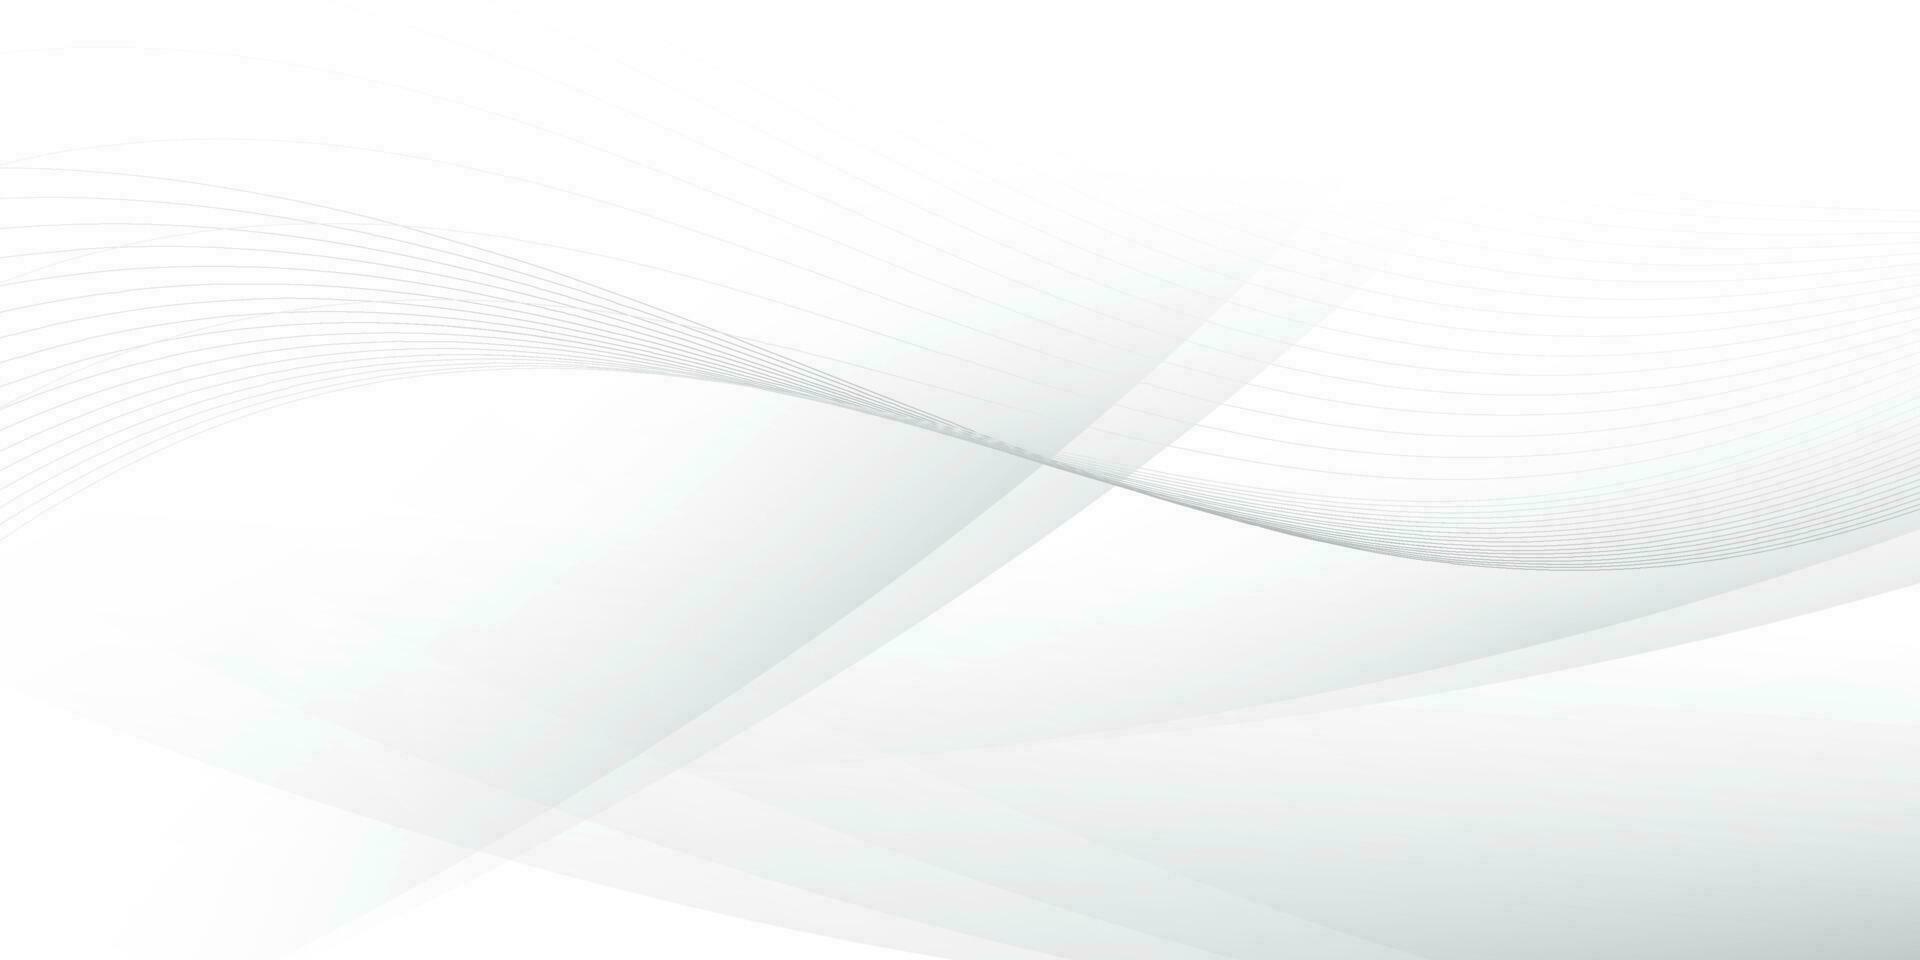 couleur blanche et grise abstraite, fond de rayures de conception moderne avec une forme ronde géométrique. illustration vectorielle. vecteur